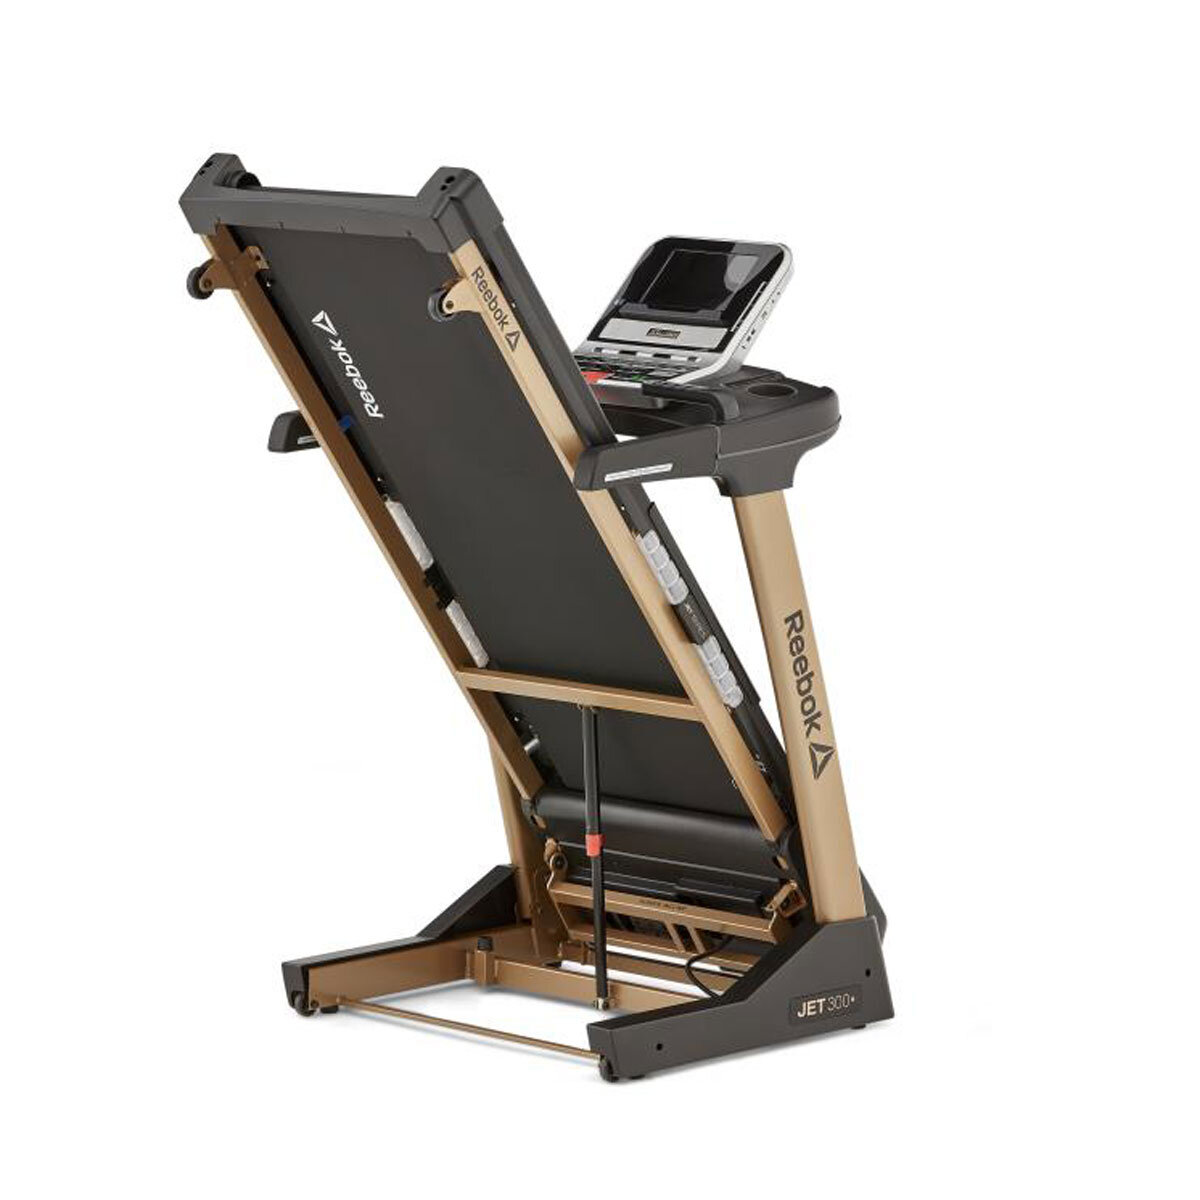 Reebok Jet 300+ Treadmill - Delivery Costco